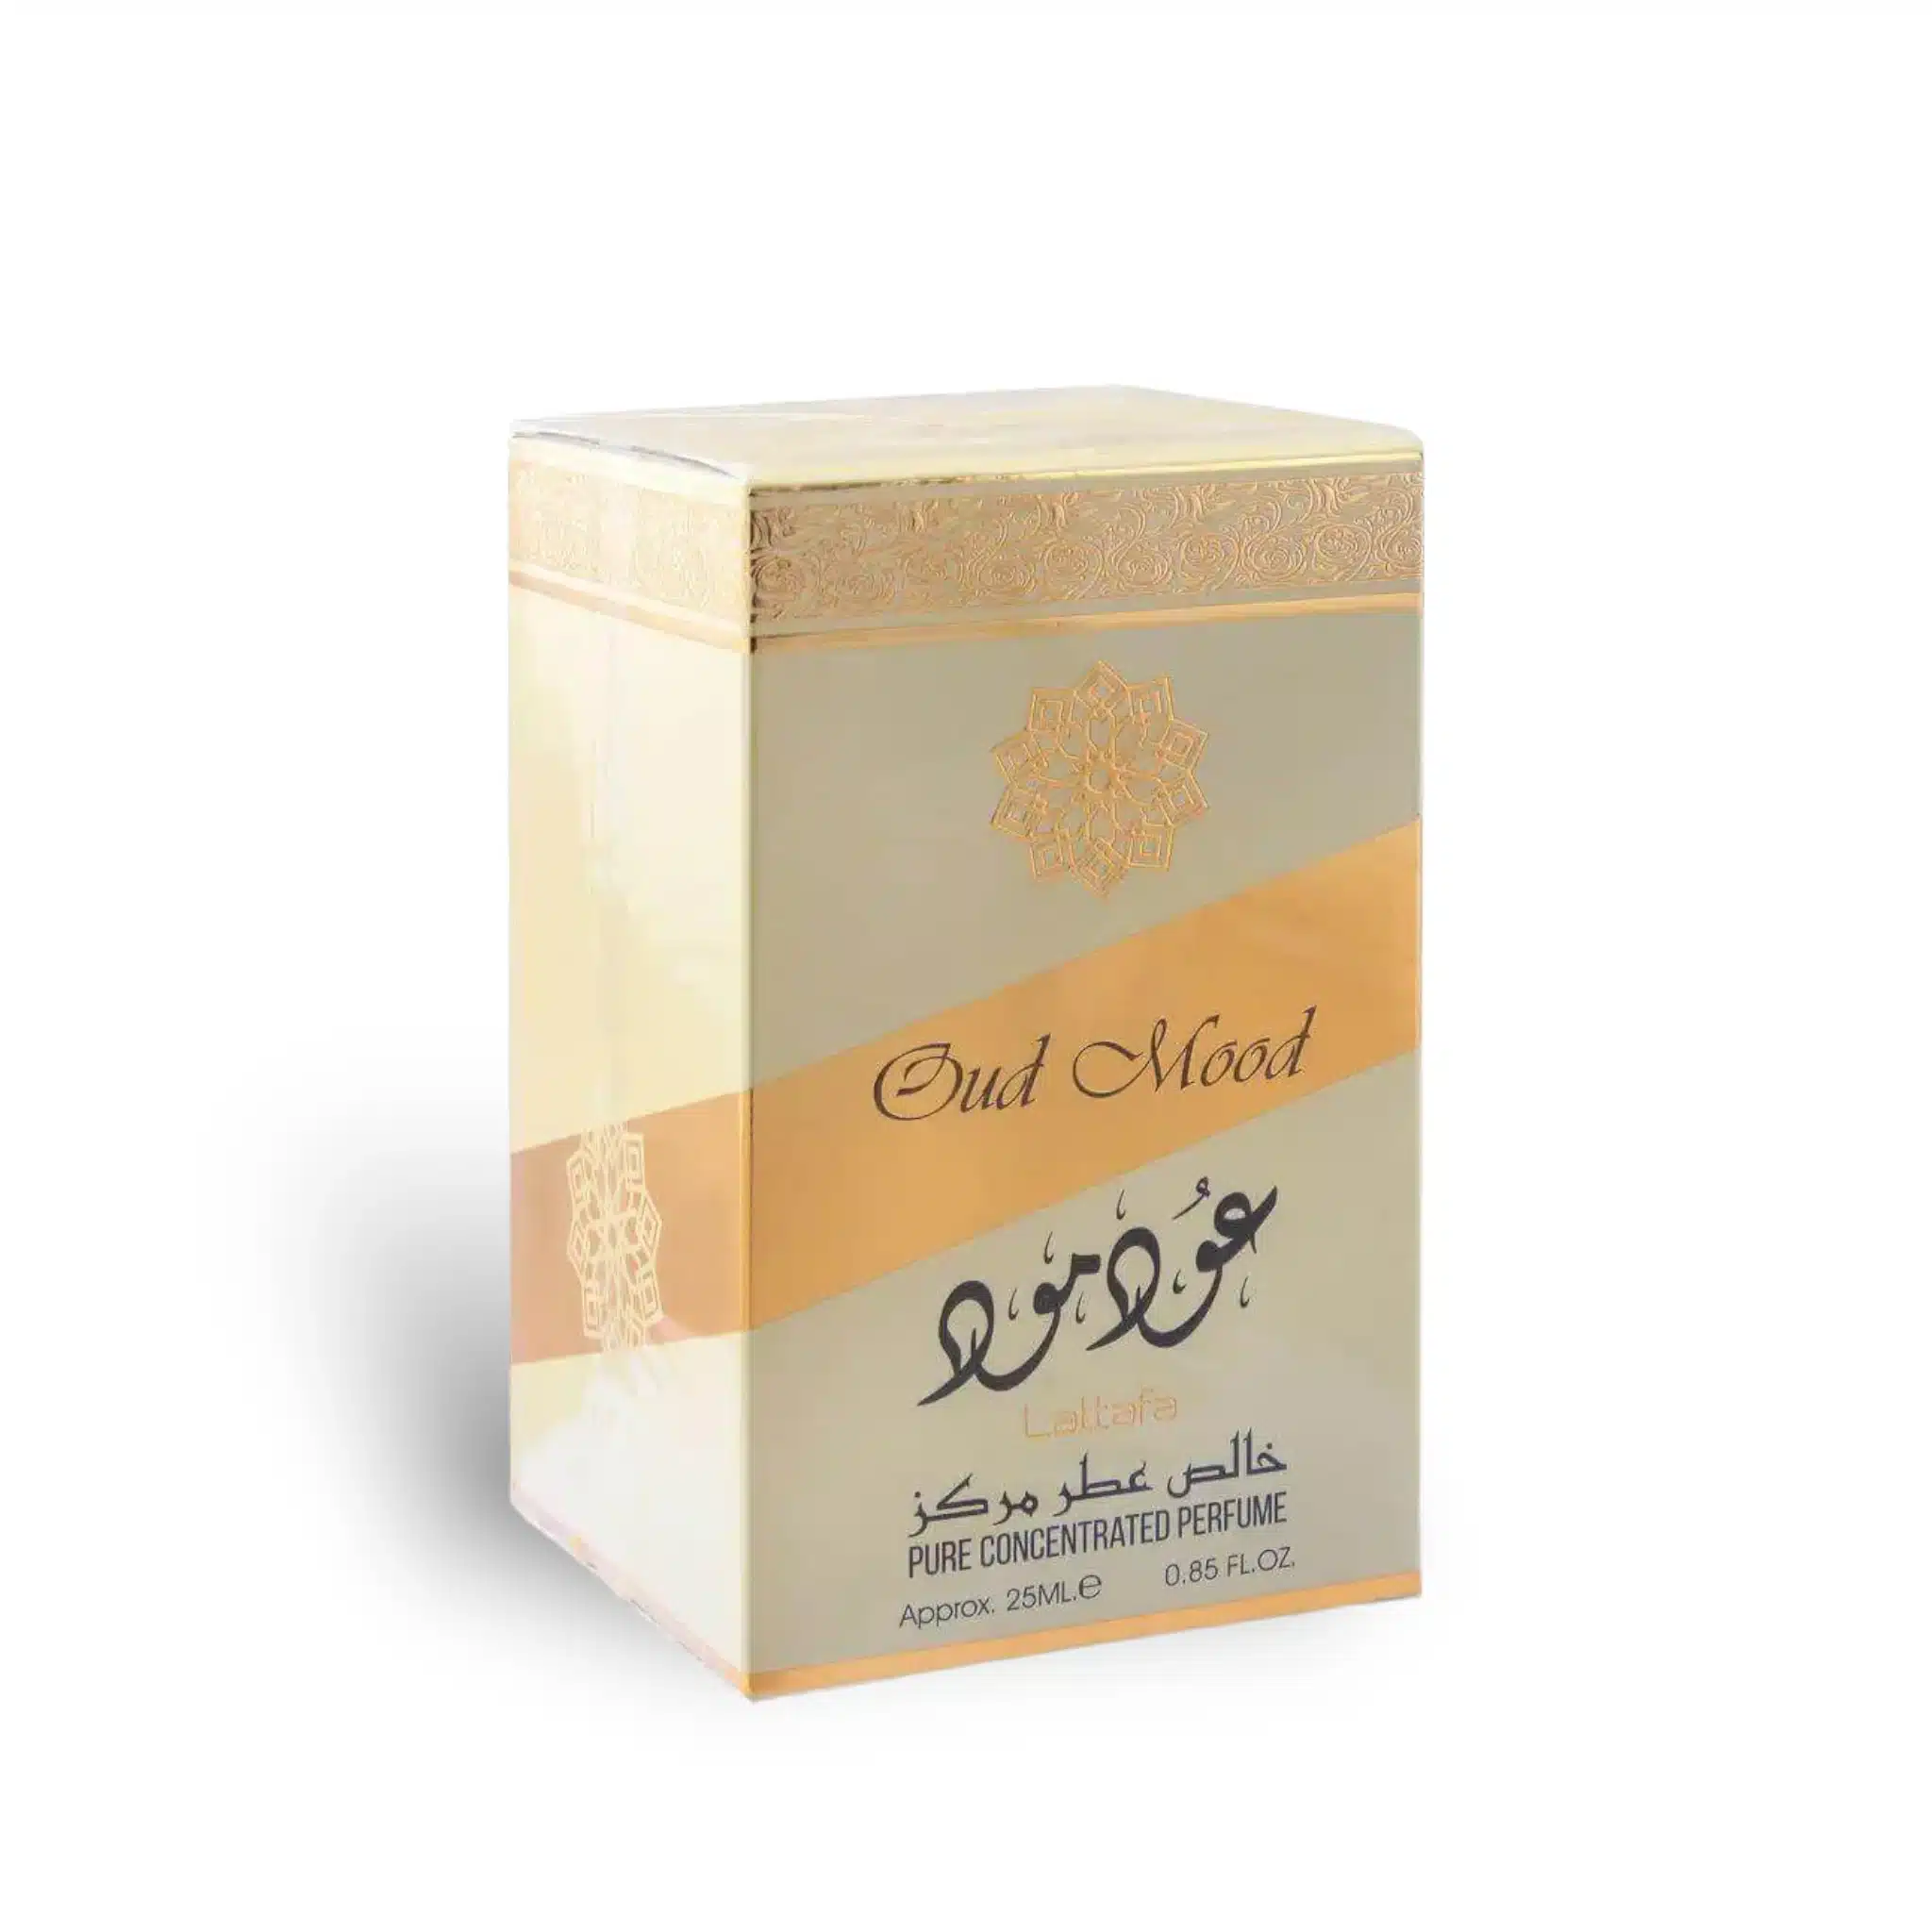 Oud Mood Concentrated Perfume Oil Attar 25Ml By Lattafa